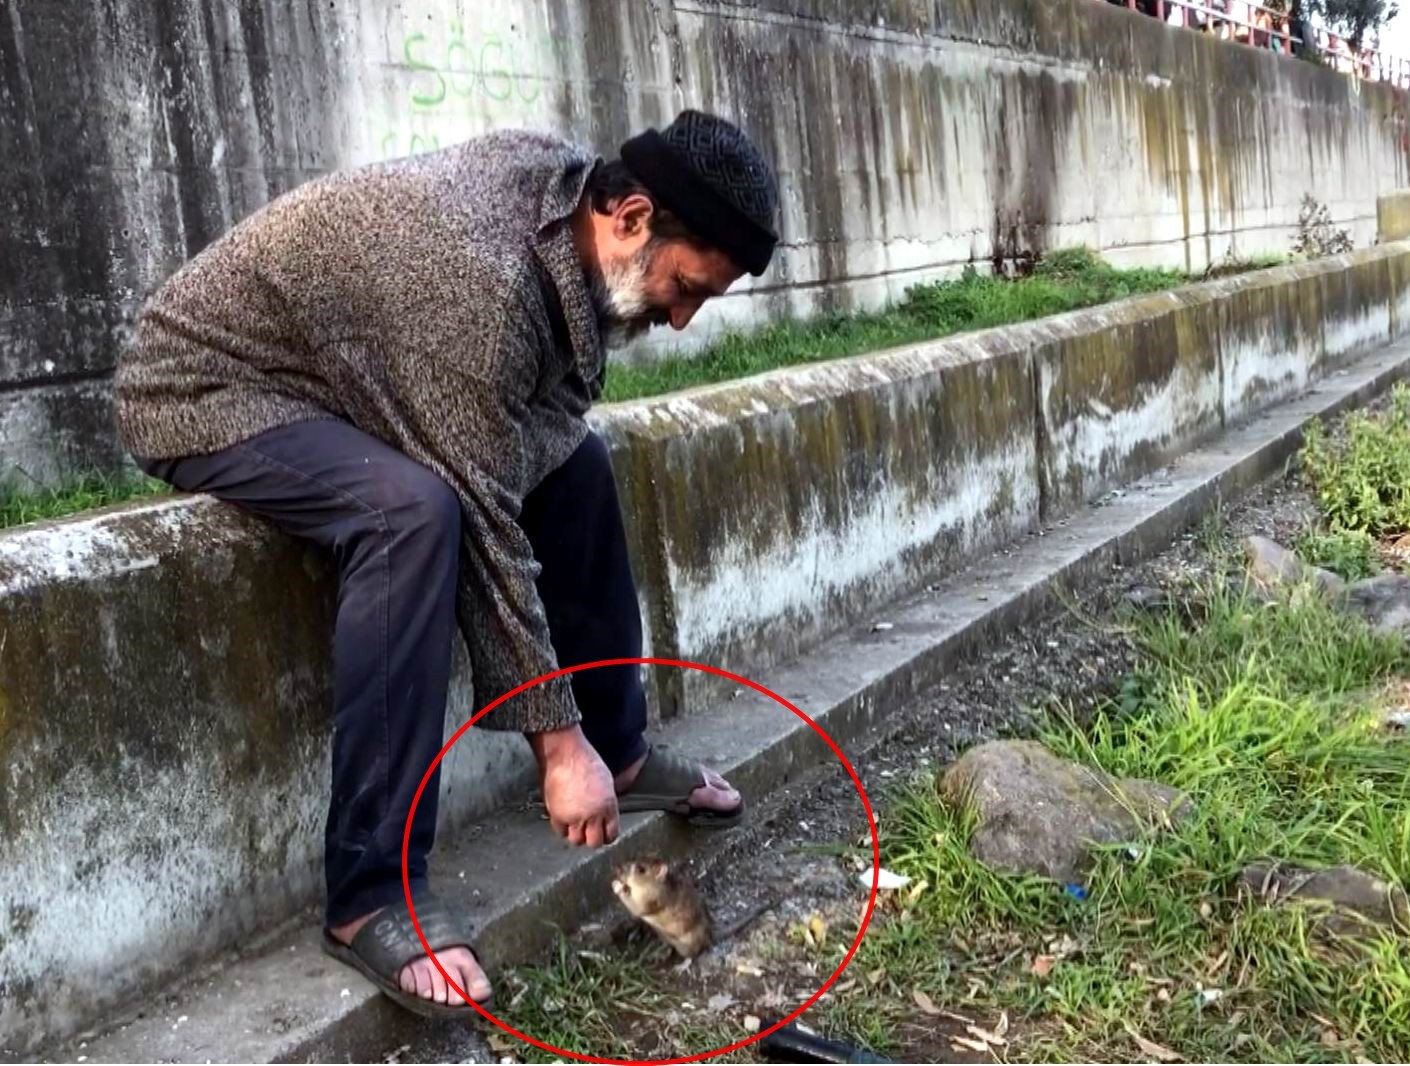 Kimsesiz adam ile farenin dostluğu: Ekmeğini fareyle paylaşıyor #samsun